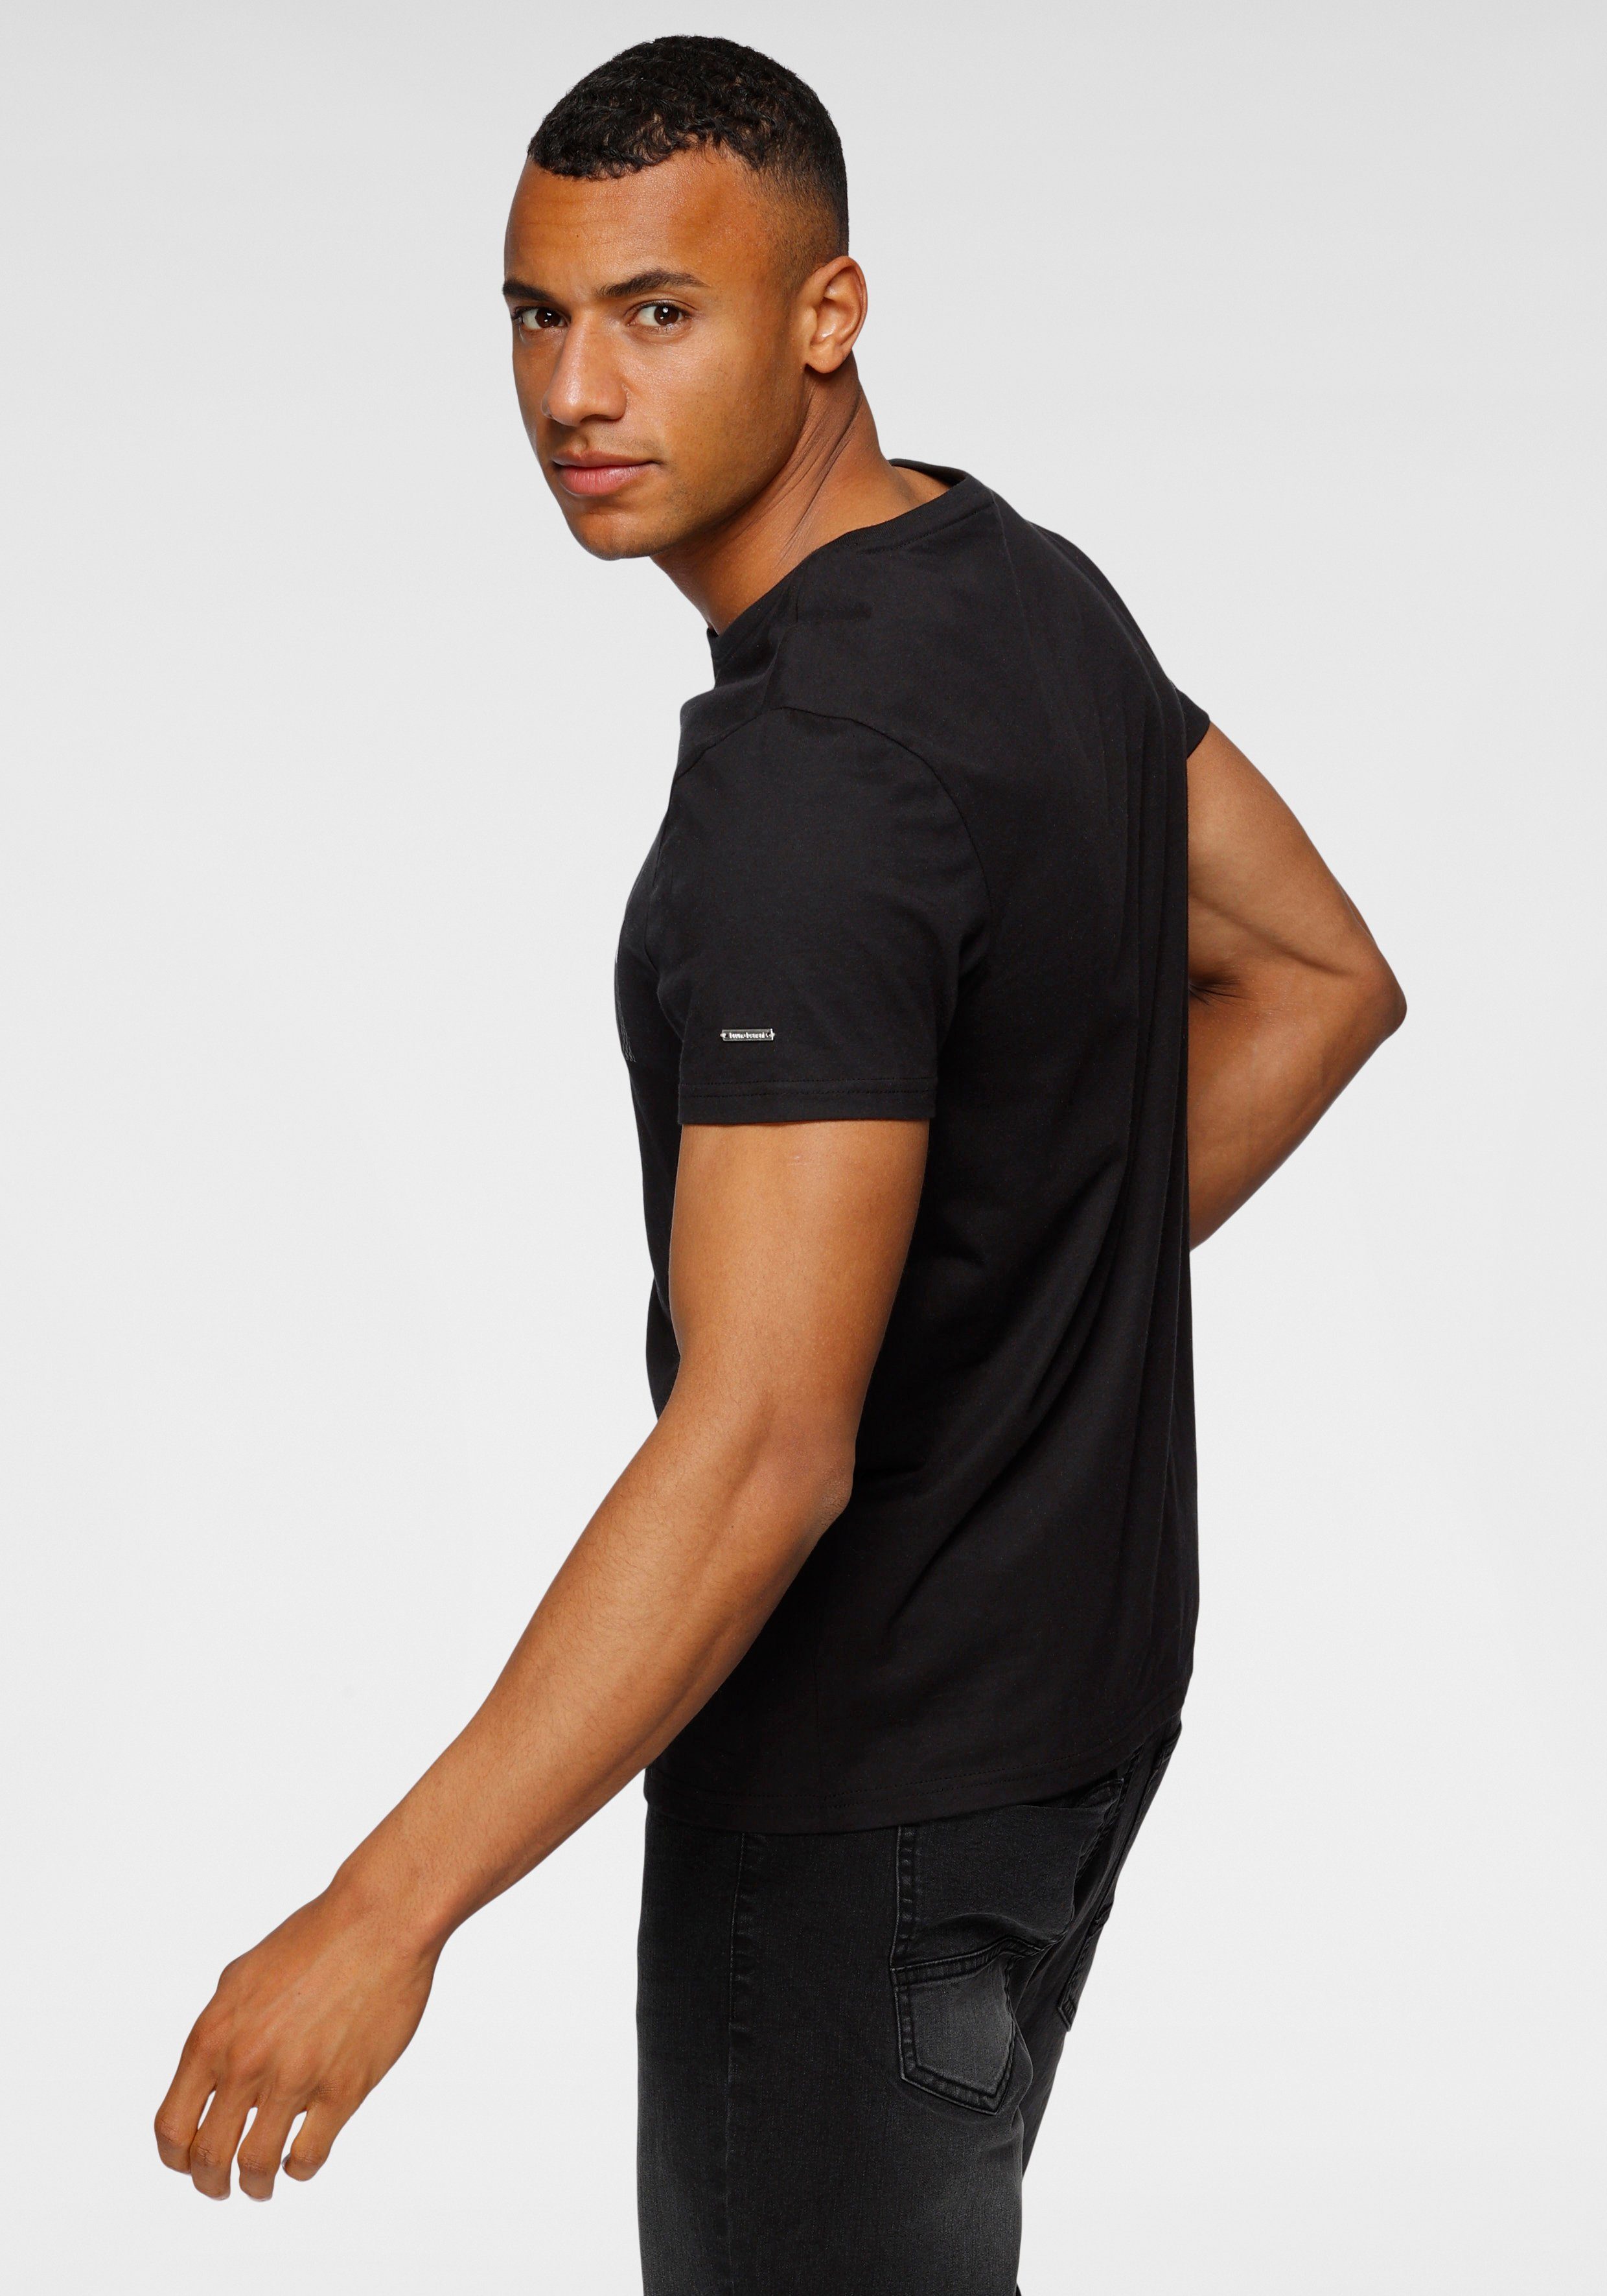 Banani mit T-Shirt schwarz Print glänzendem Bruno